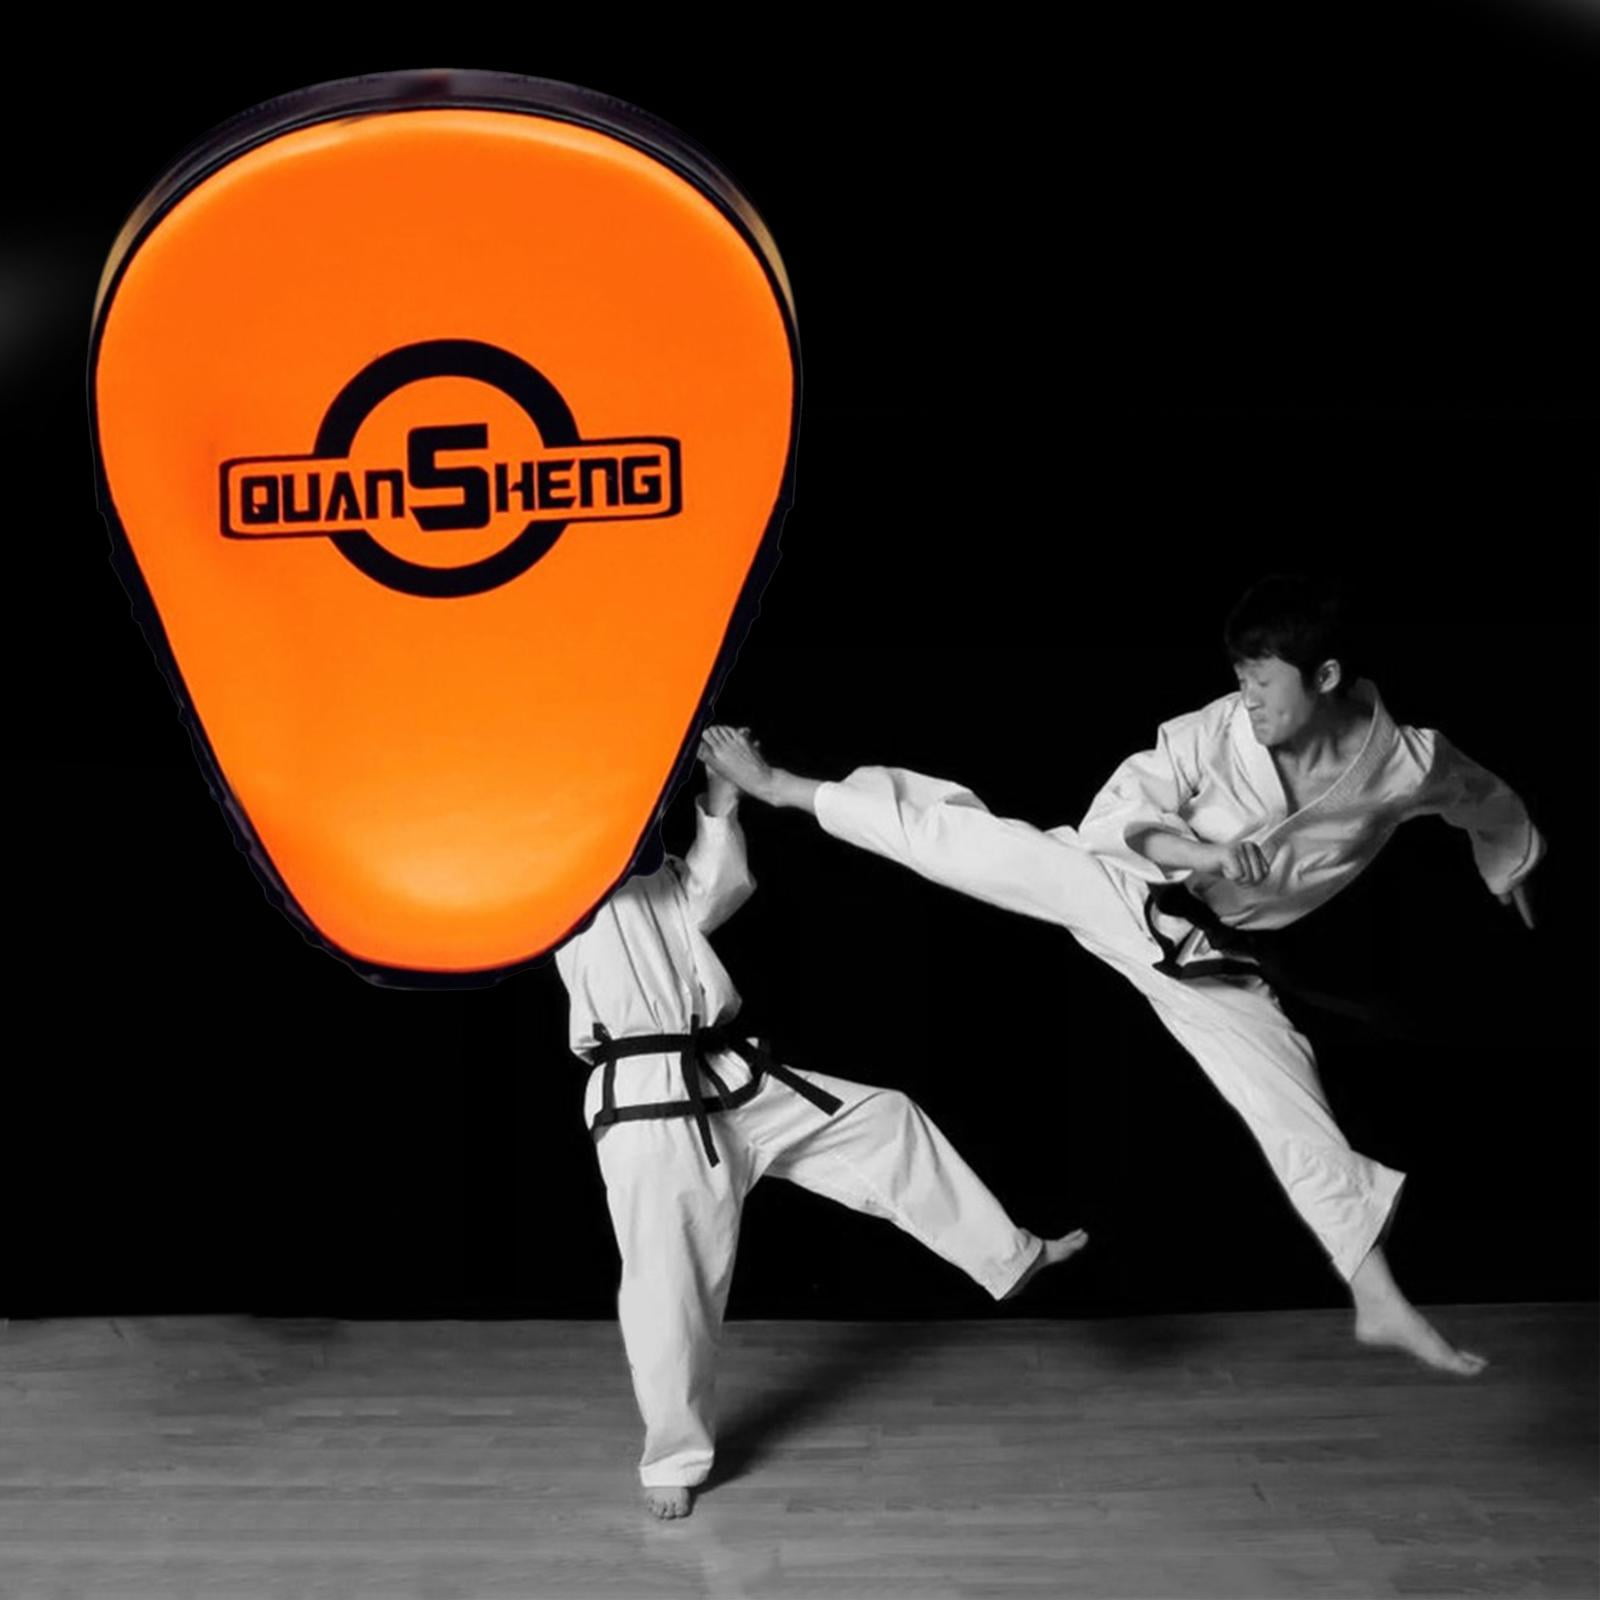 Strike Shield Foot Kicking Punching Target Pad for Taekwondo Karate PU Leather 